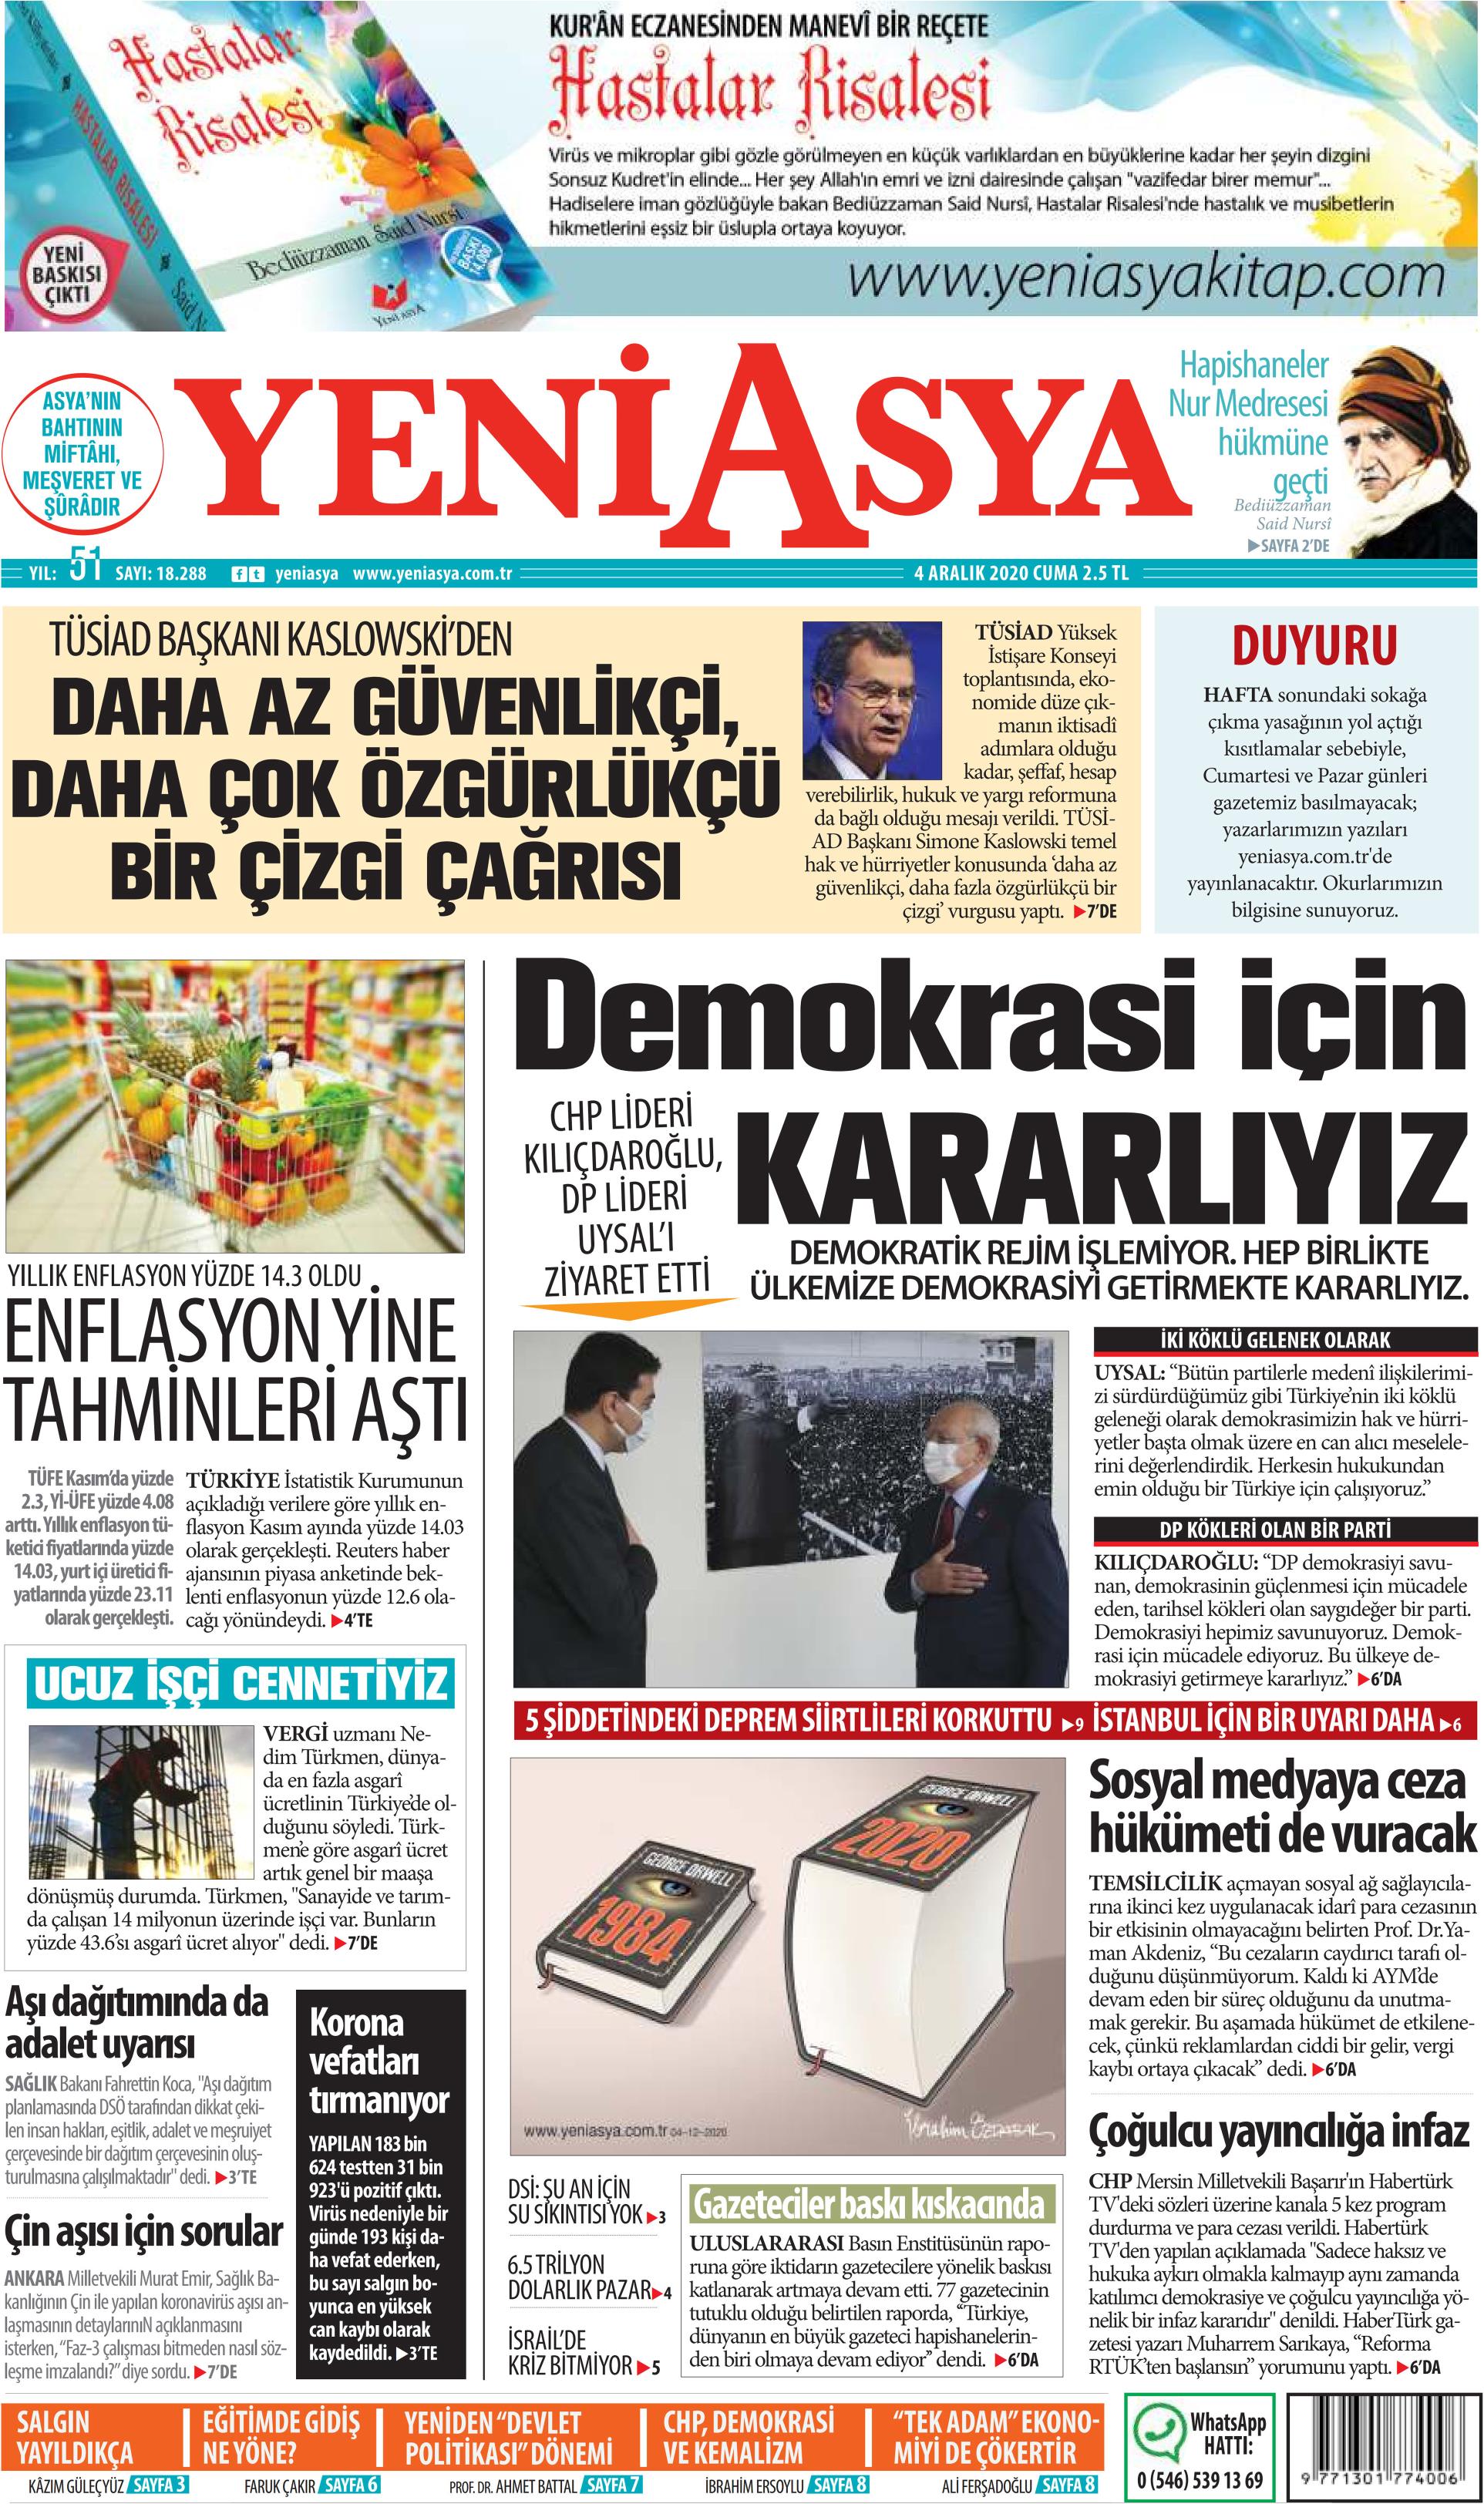 Hıncal Uluç isyan etti: Gazete keyfi değil, gazete zehri